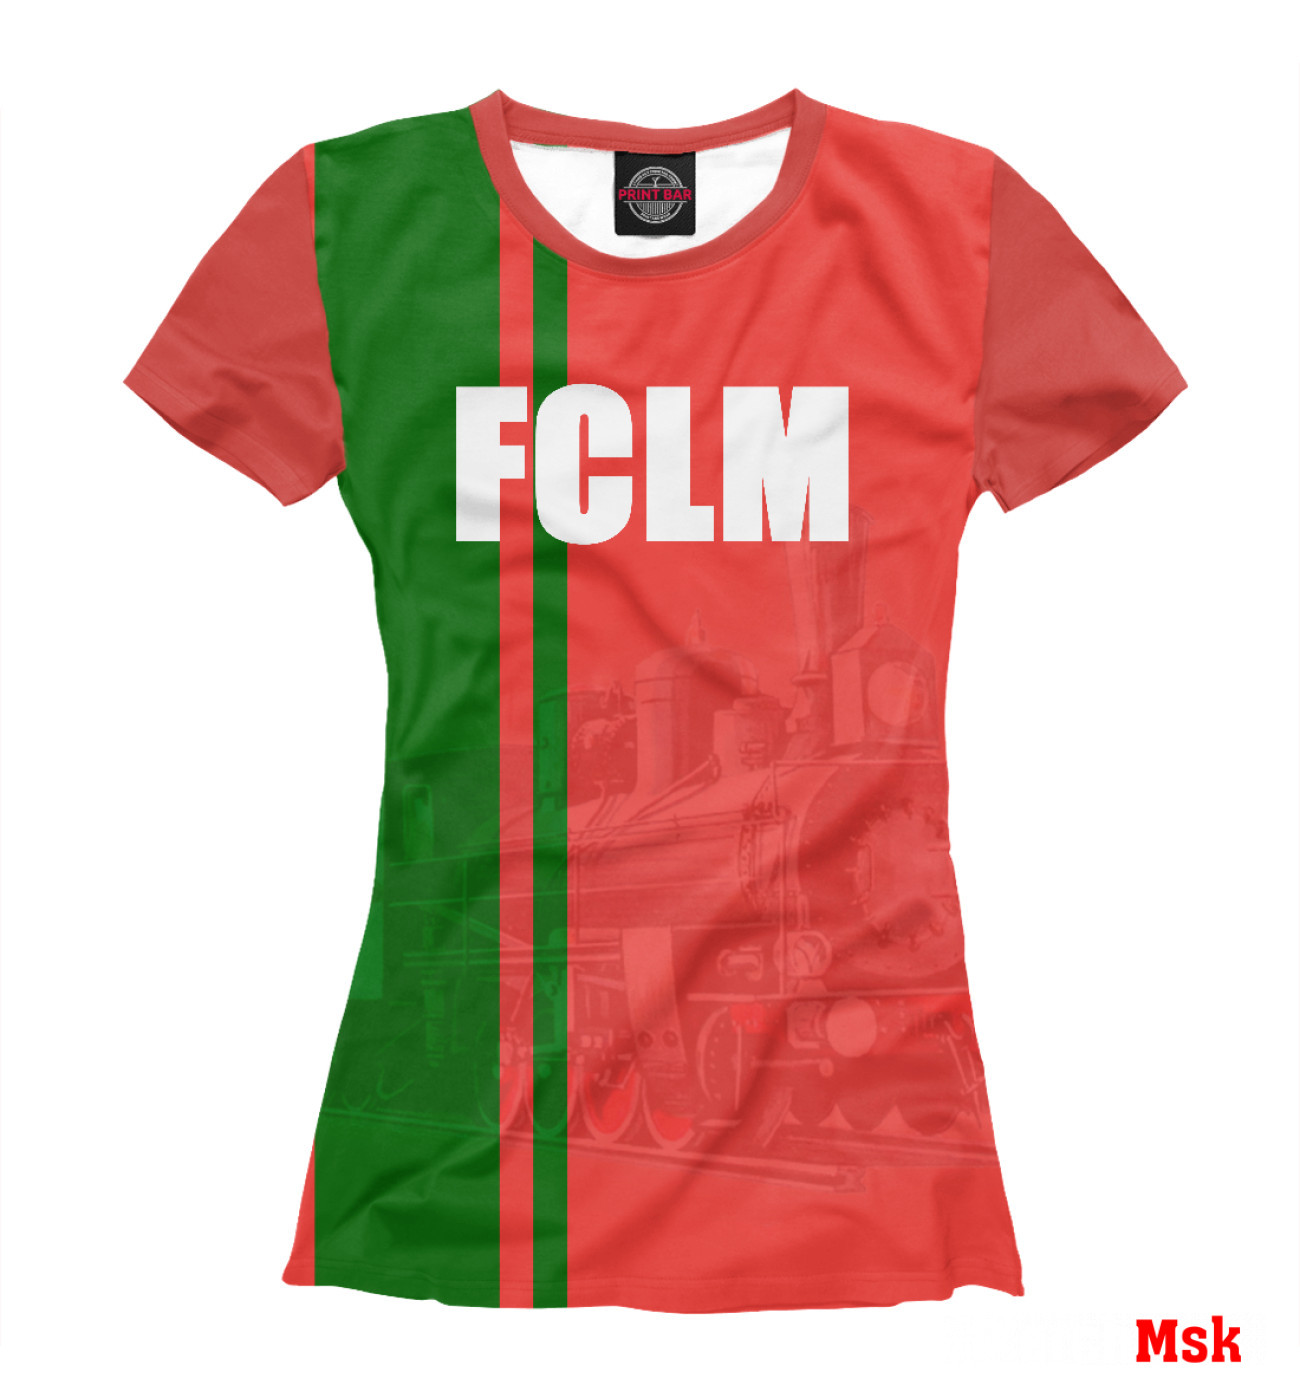 Женская Футболка FCLM, артикул: FTO-794917-fut-1